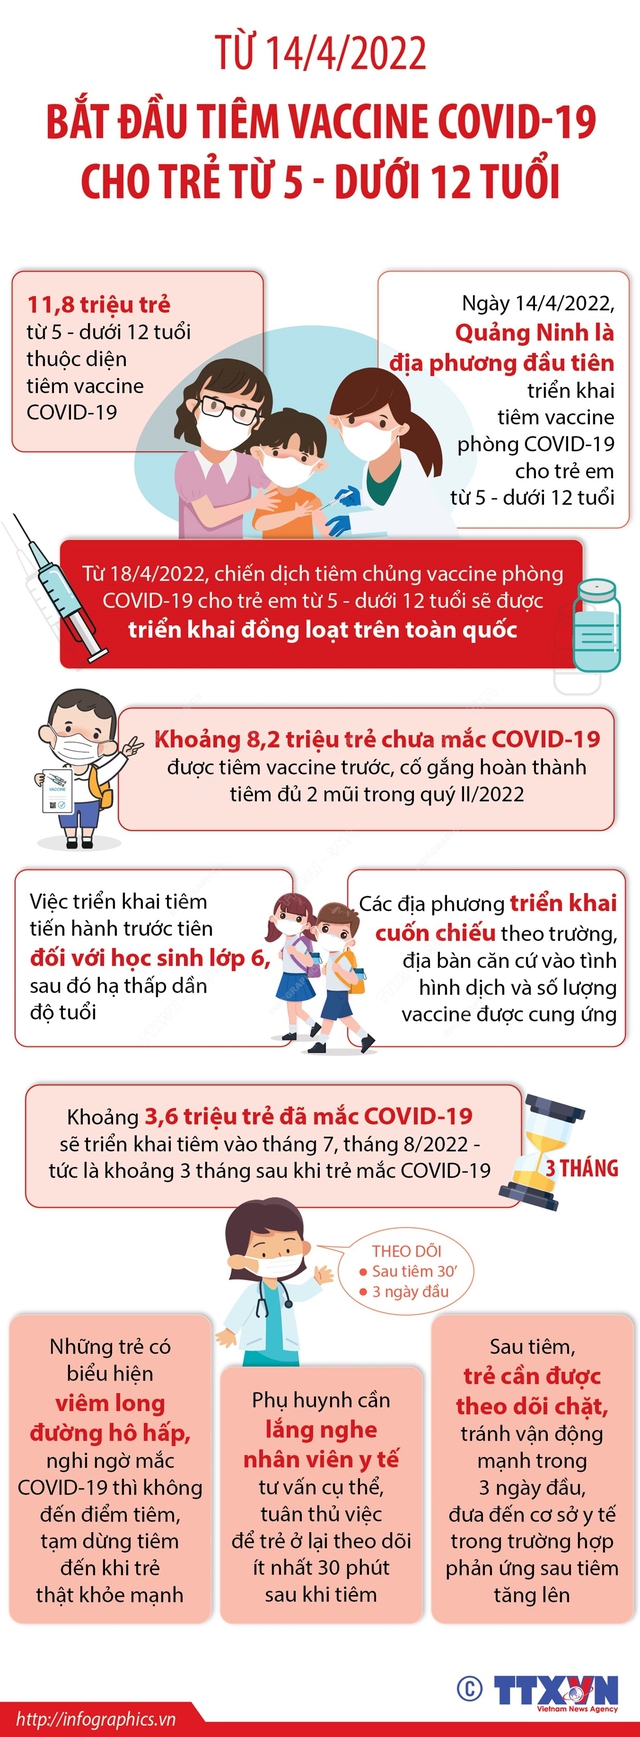 Những lưu ý phụ huynh cần biết khi cho trẻ tiêm vaccine COVID-19 - Ảnh 5.